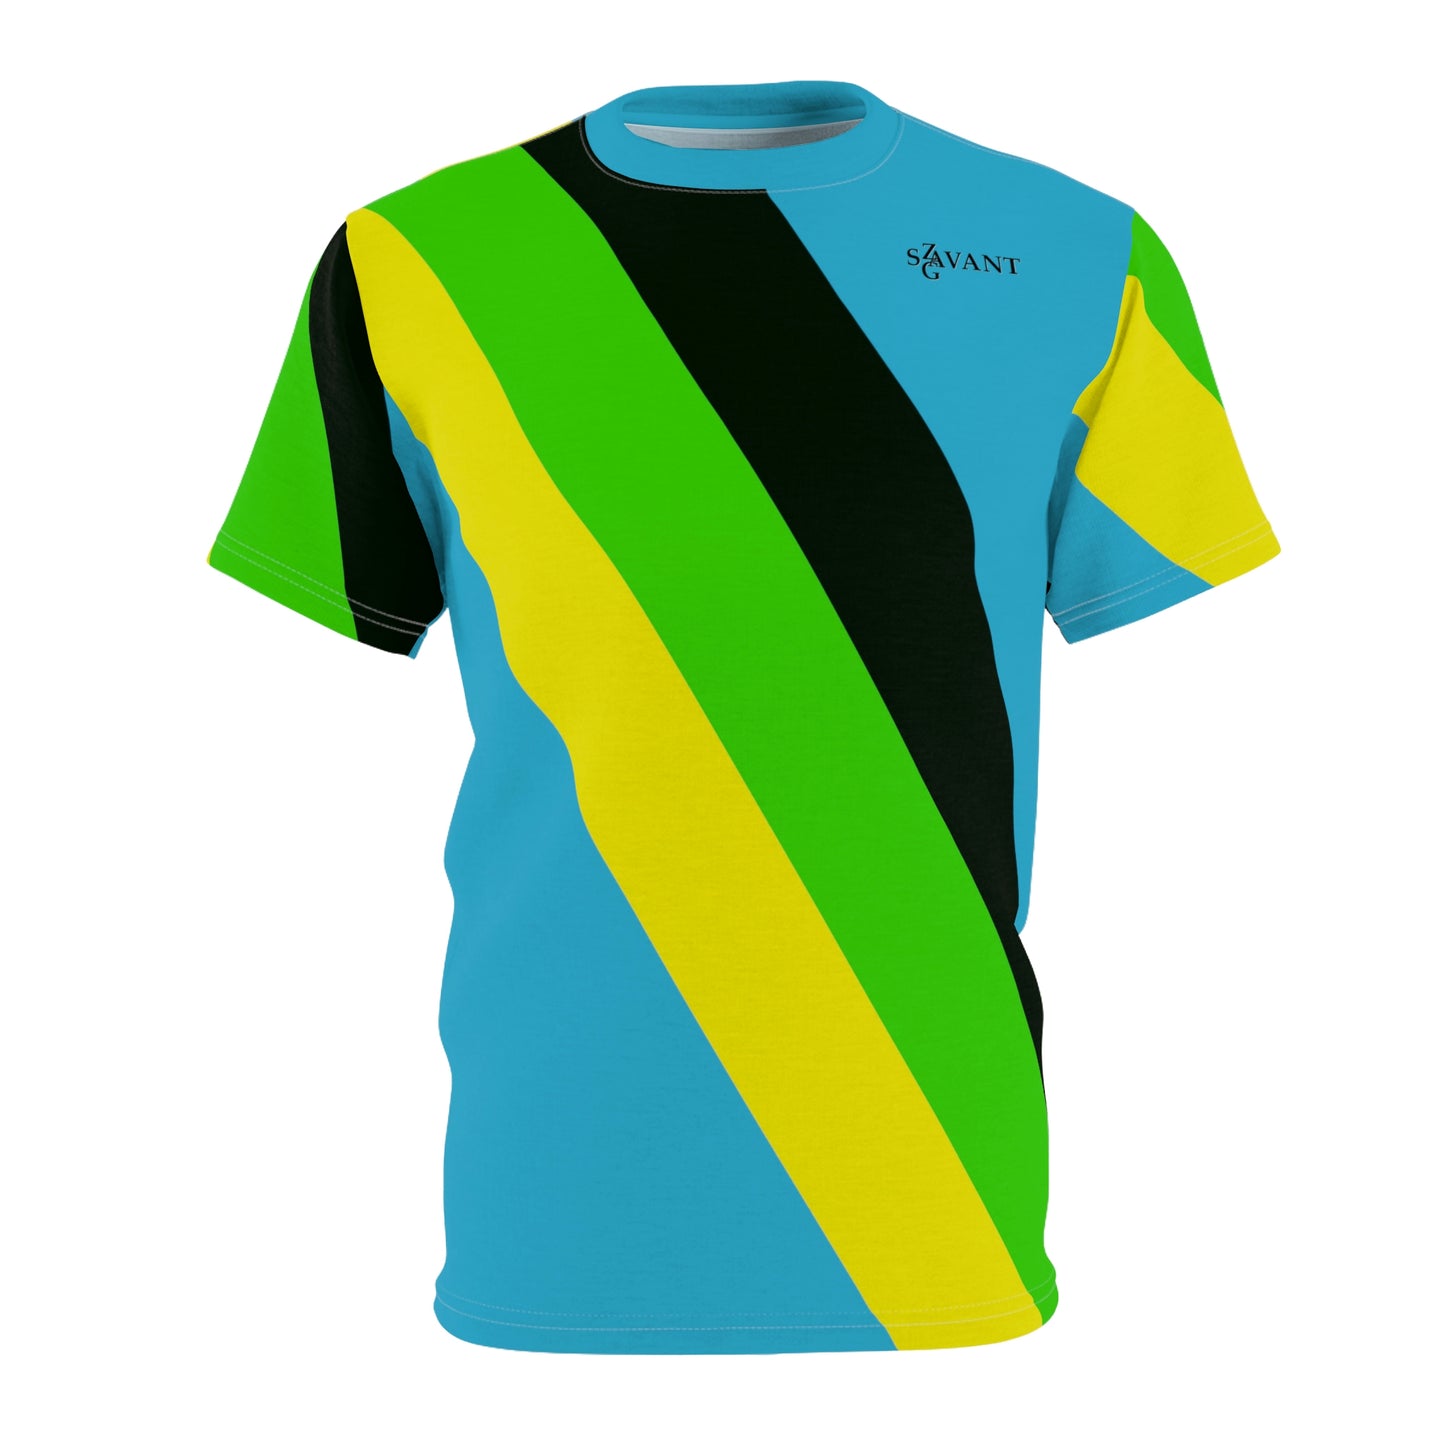 Jamaican Color Men’s Cut & Sew T-shirt - Turquoise